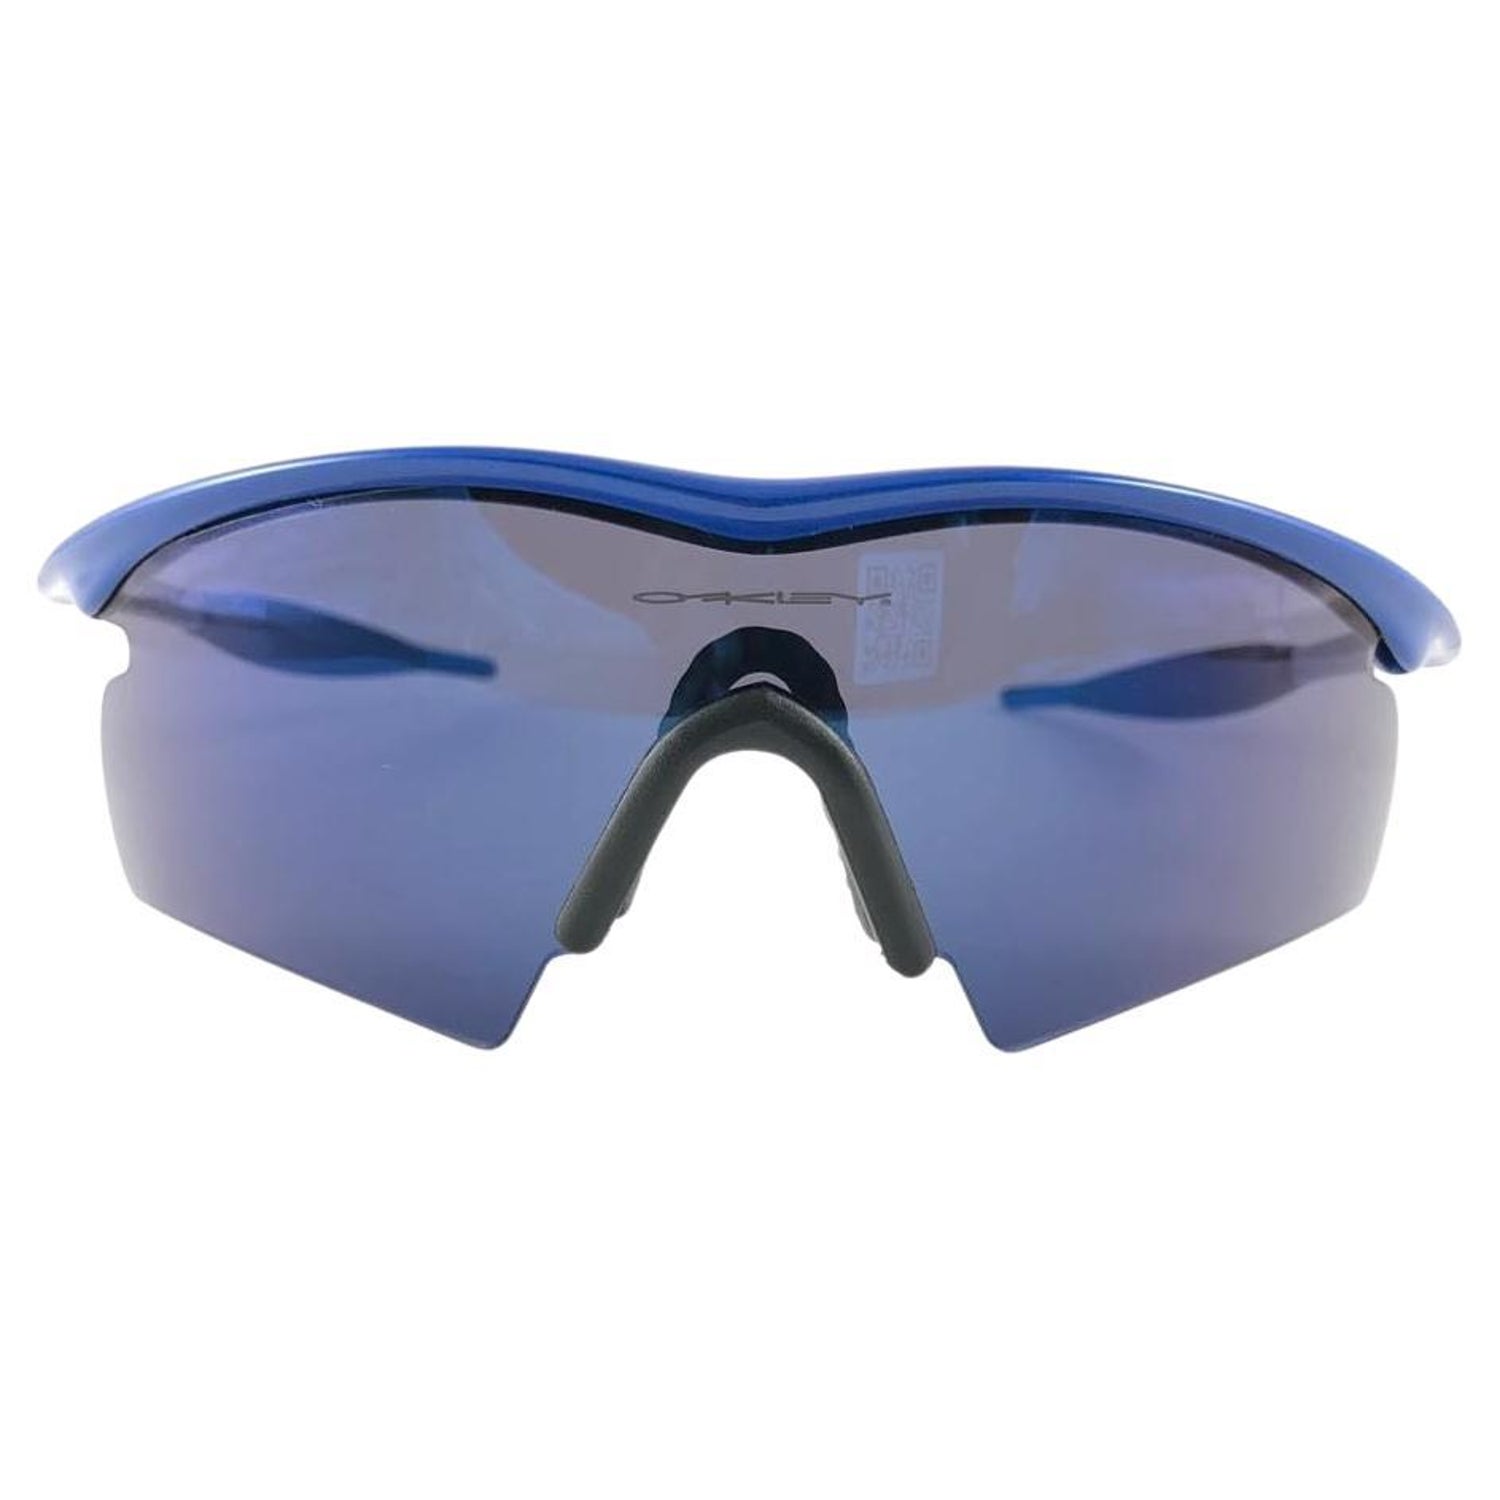 Louis Vuitton Millionaire Sunglasses Blue - For Sale on 1stDibs  blue lv  sunglasses, louis vuitton glasses serial number, millionaire bag louis  vuitton